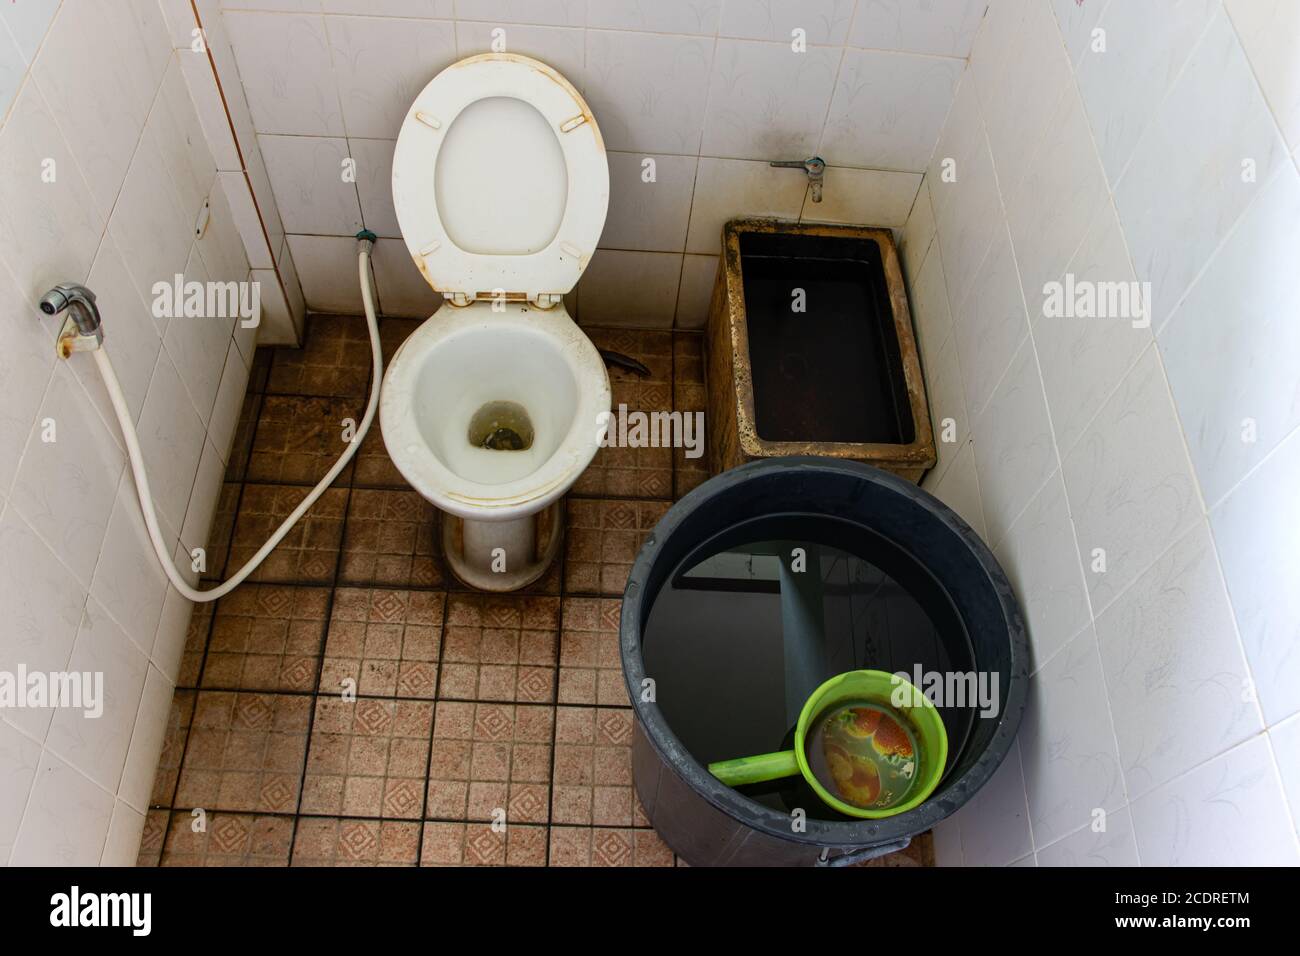 Alte Toilettenschüssel In Stockfotos und -bilder Kaufen - Alamy